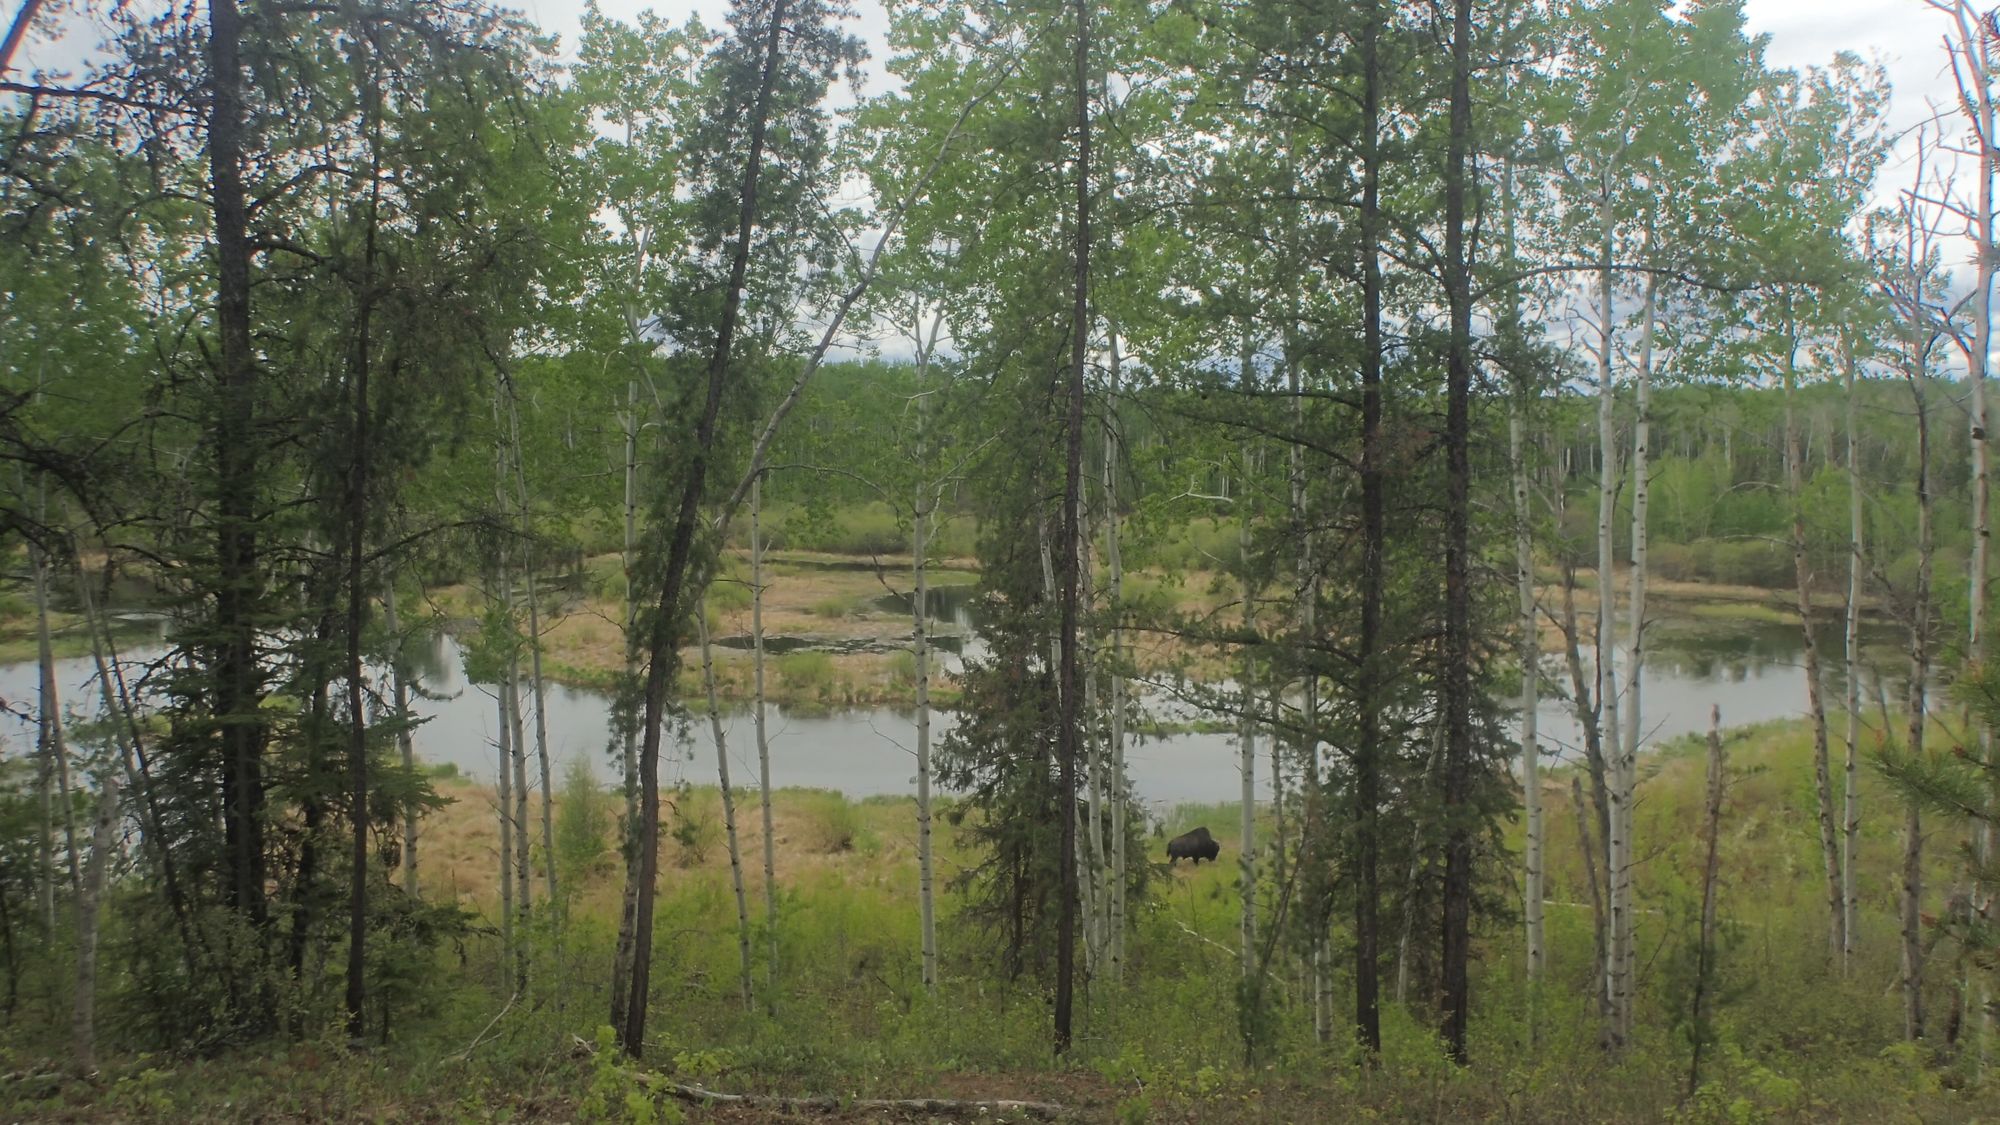 Ronald Lake wood bison ecology